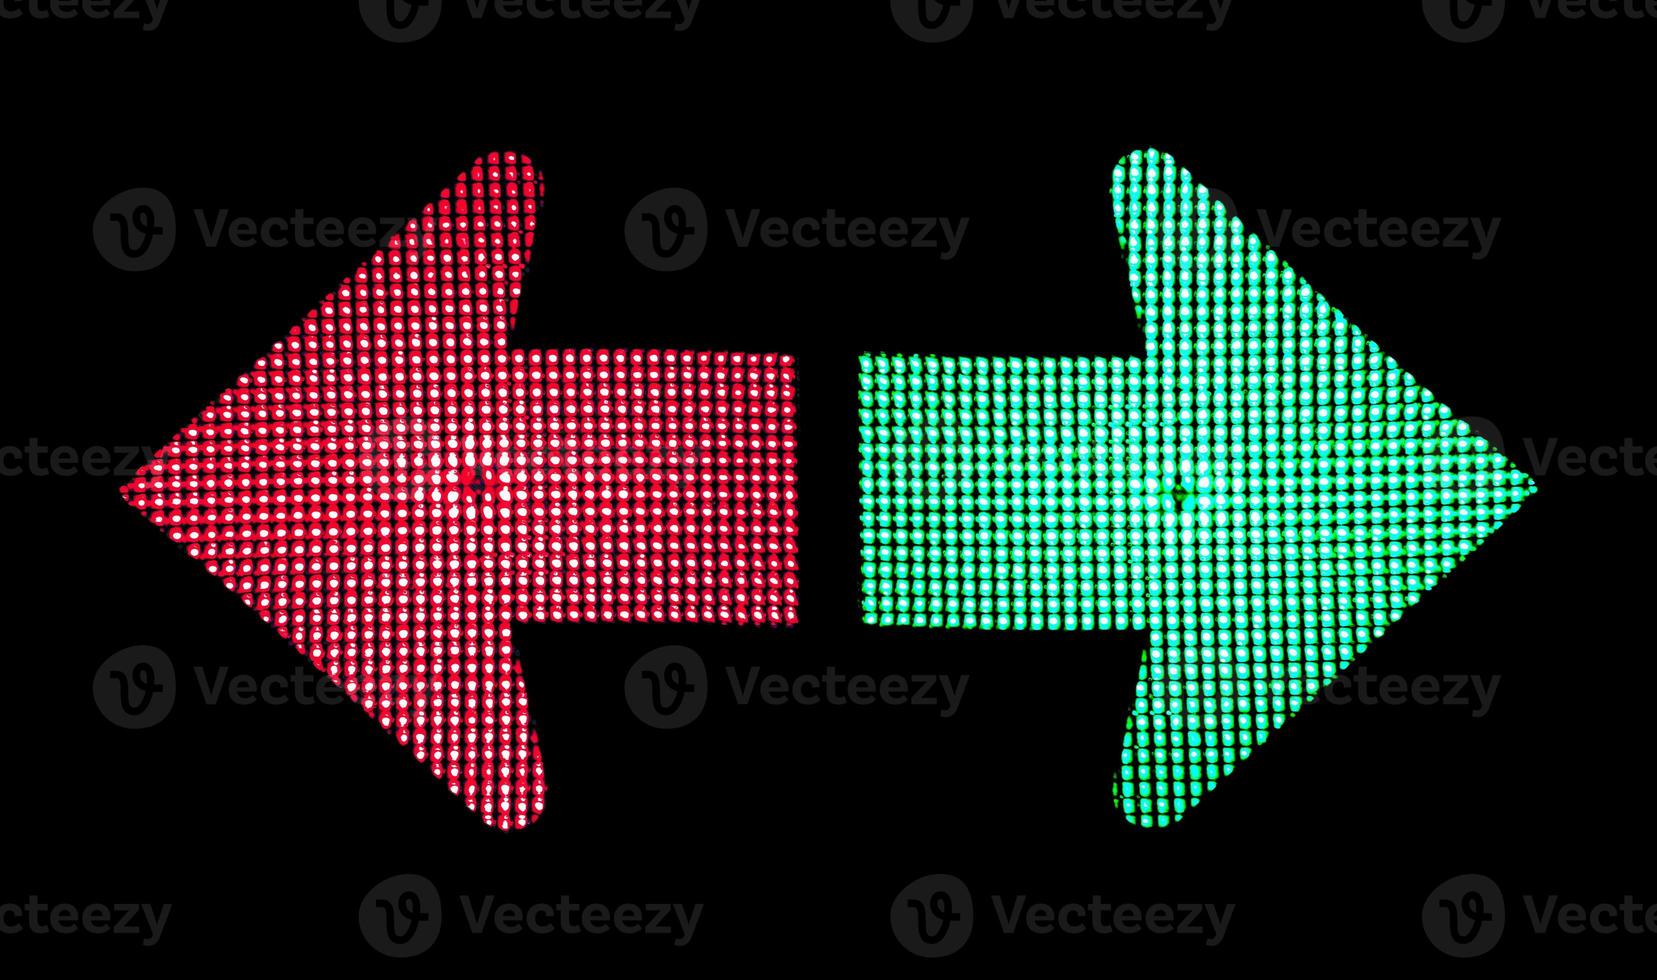 rätt och fel riktning. beslut begrepp. grön pil som visar rätt och grön pil som visar rätt på trafik lampor på svart bakgrund foto